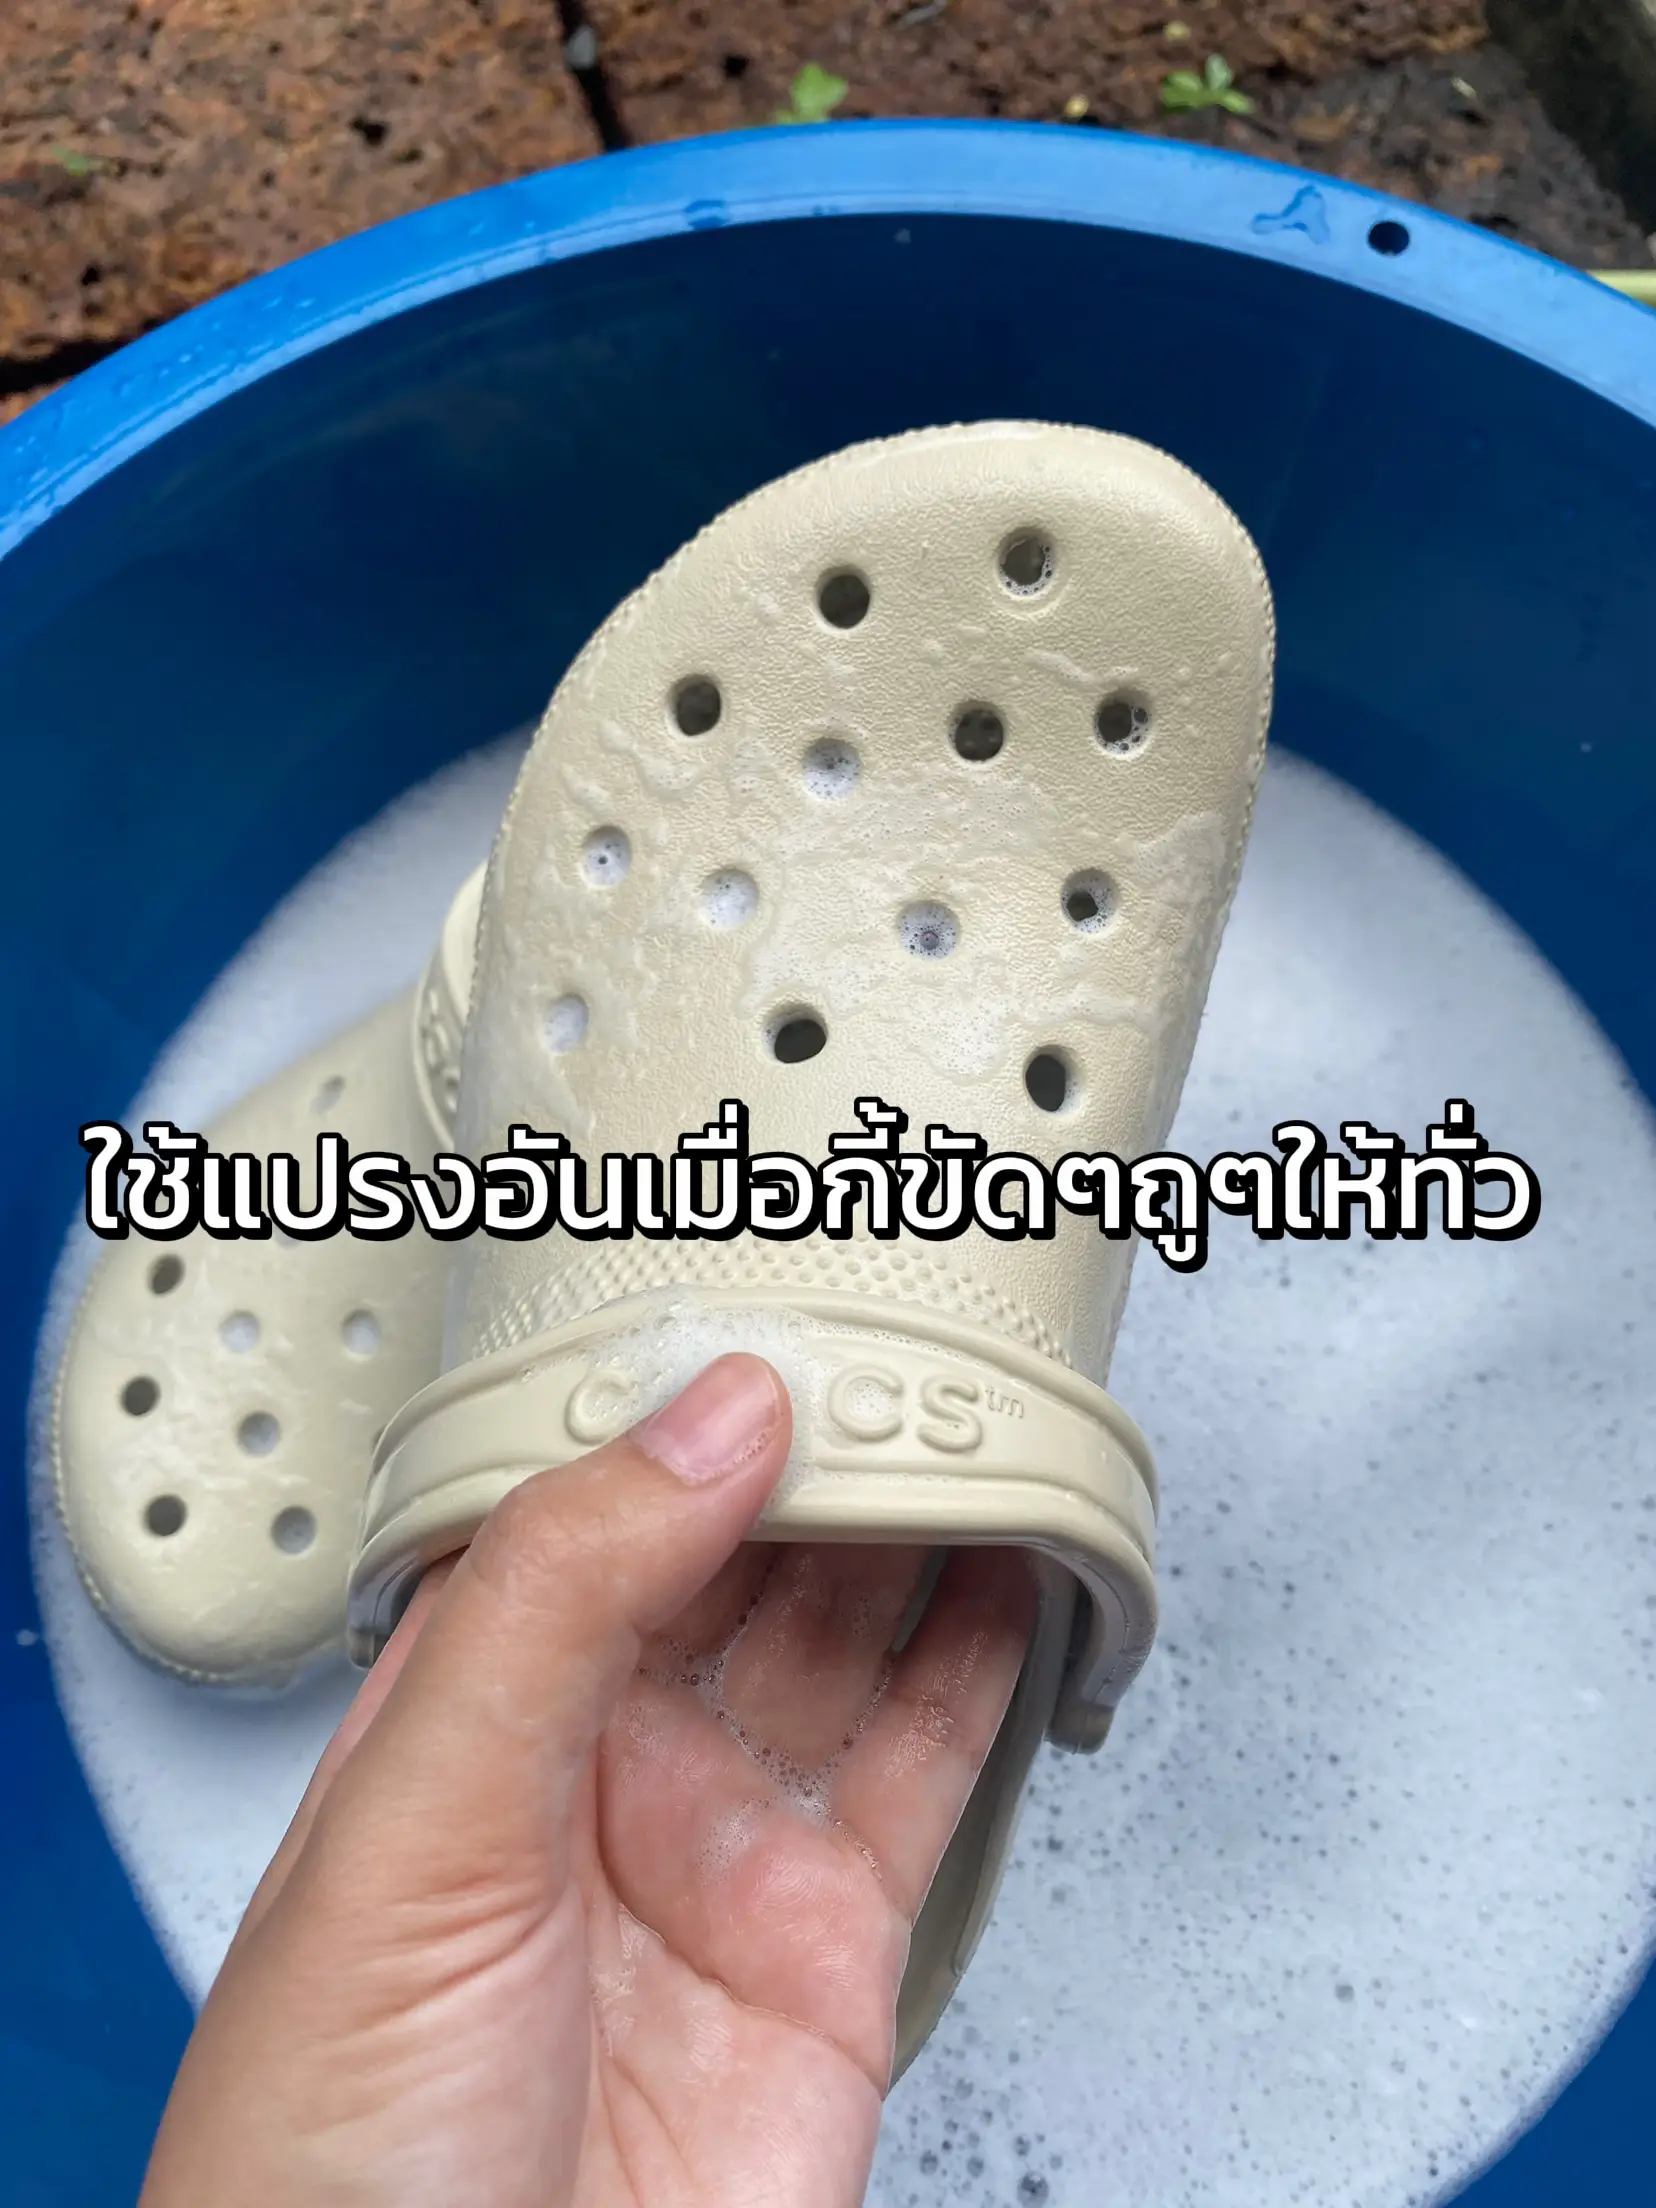 Scrubs Crocs - Shop on Pinterest